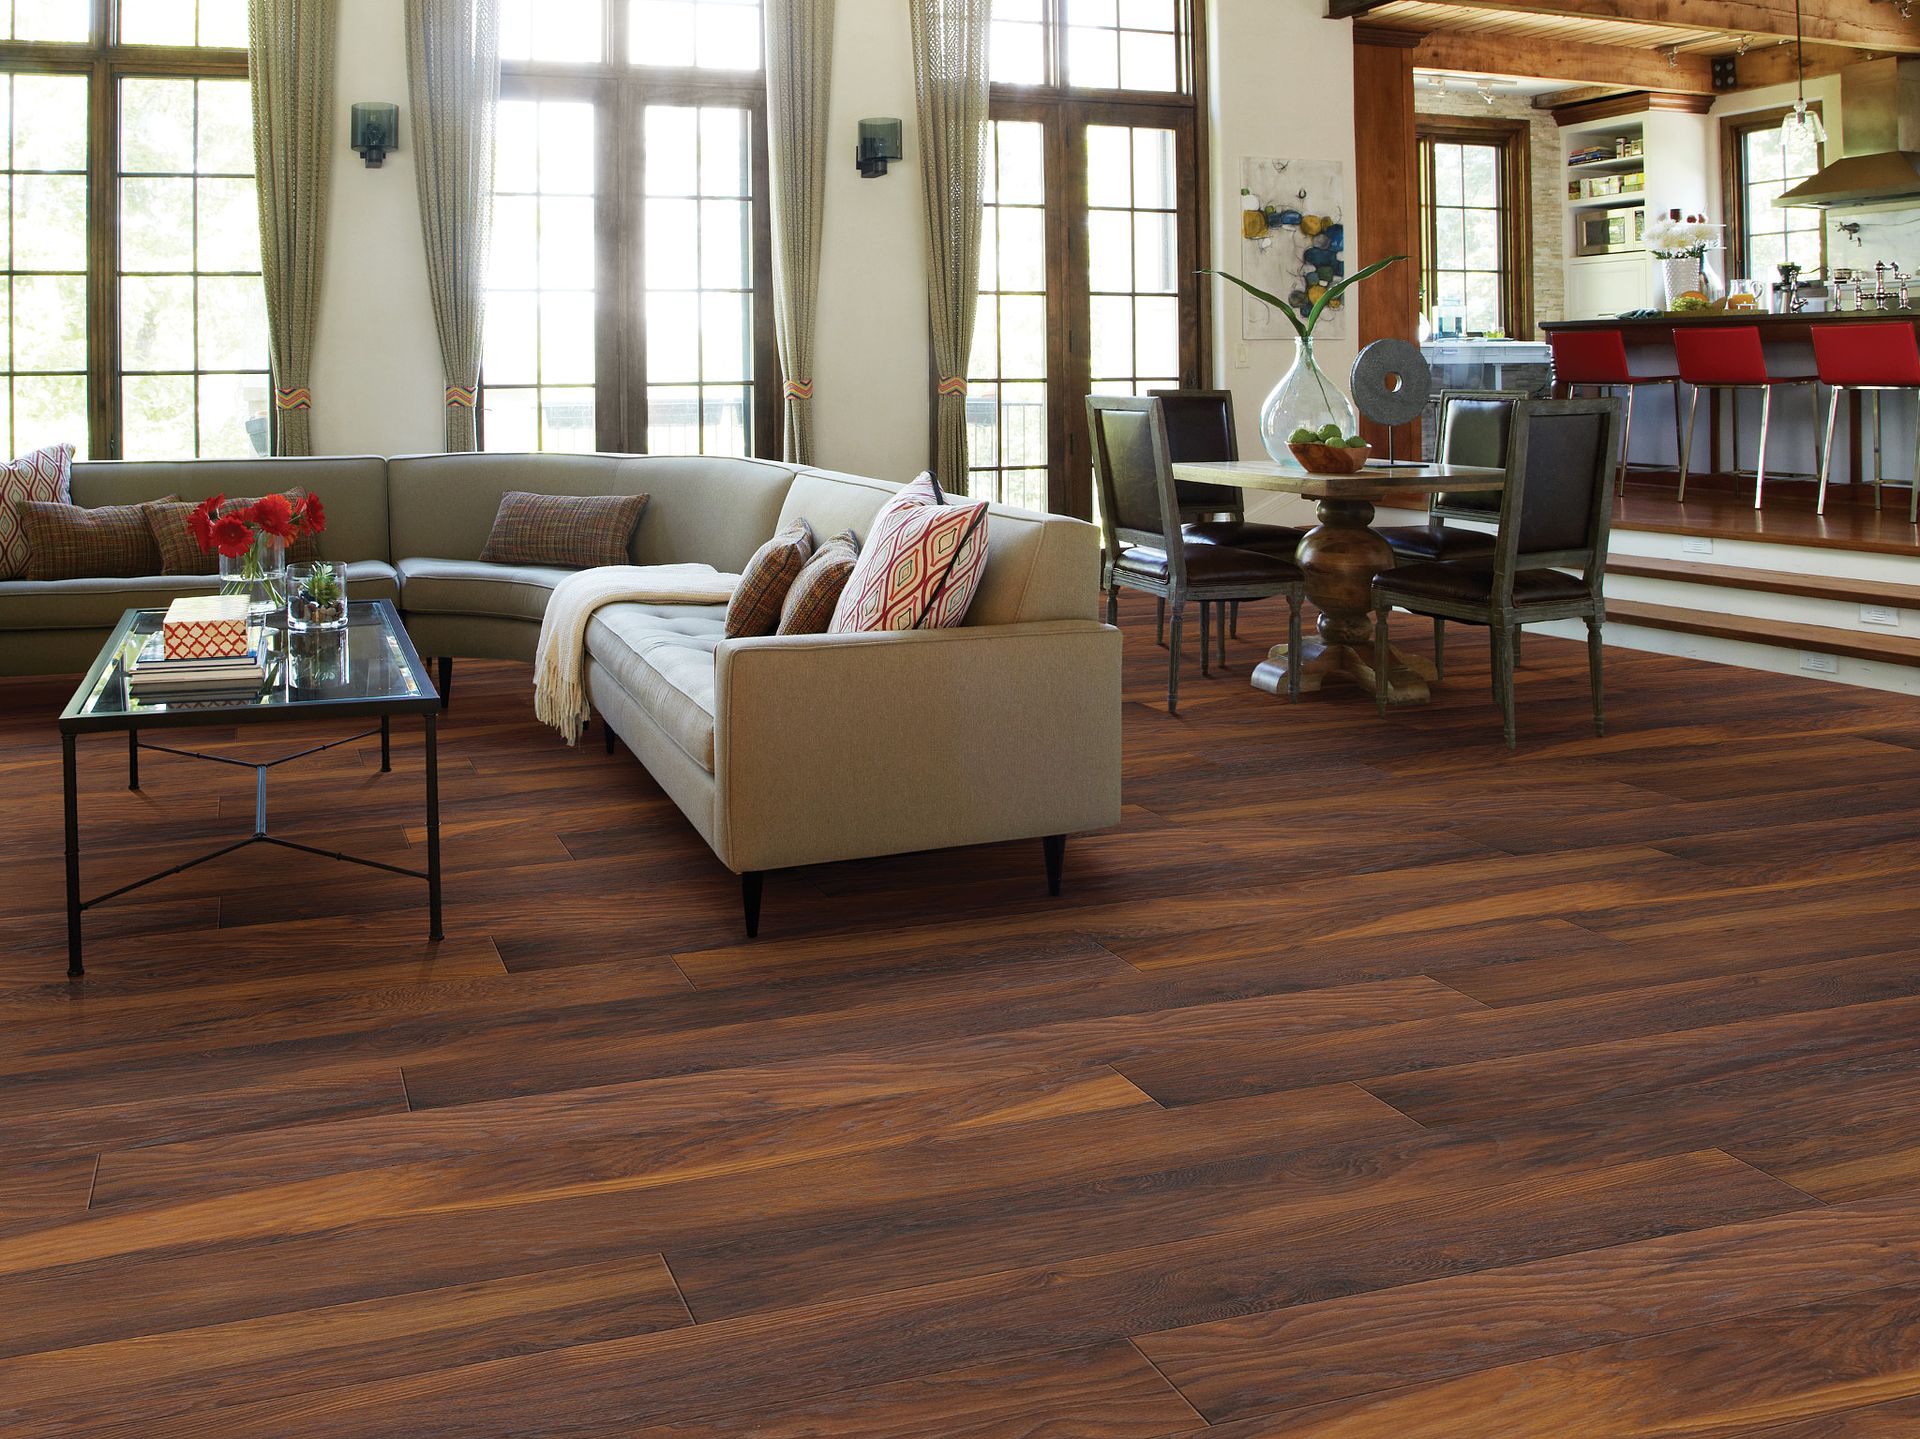 sammentrækning mønt lette How to Clean Wood Laminate Floors | Shaw Floors